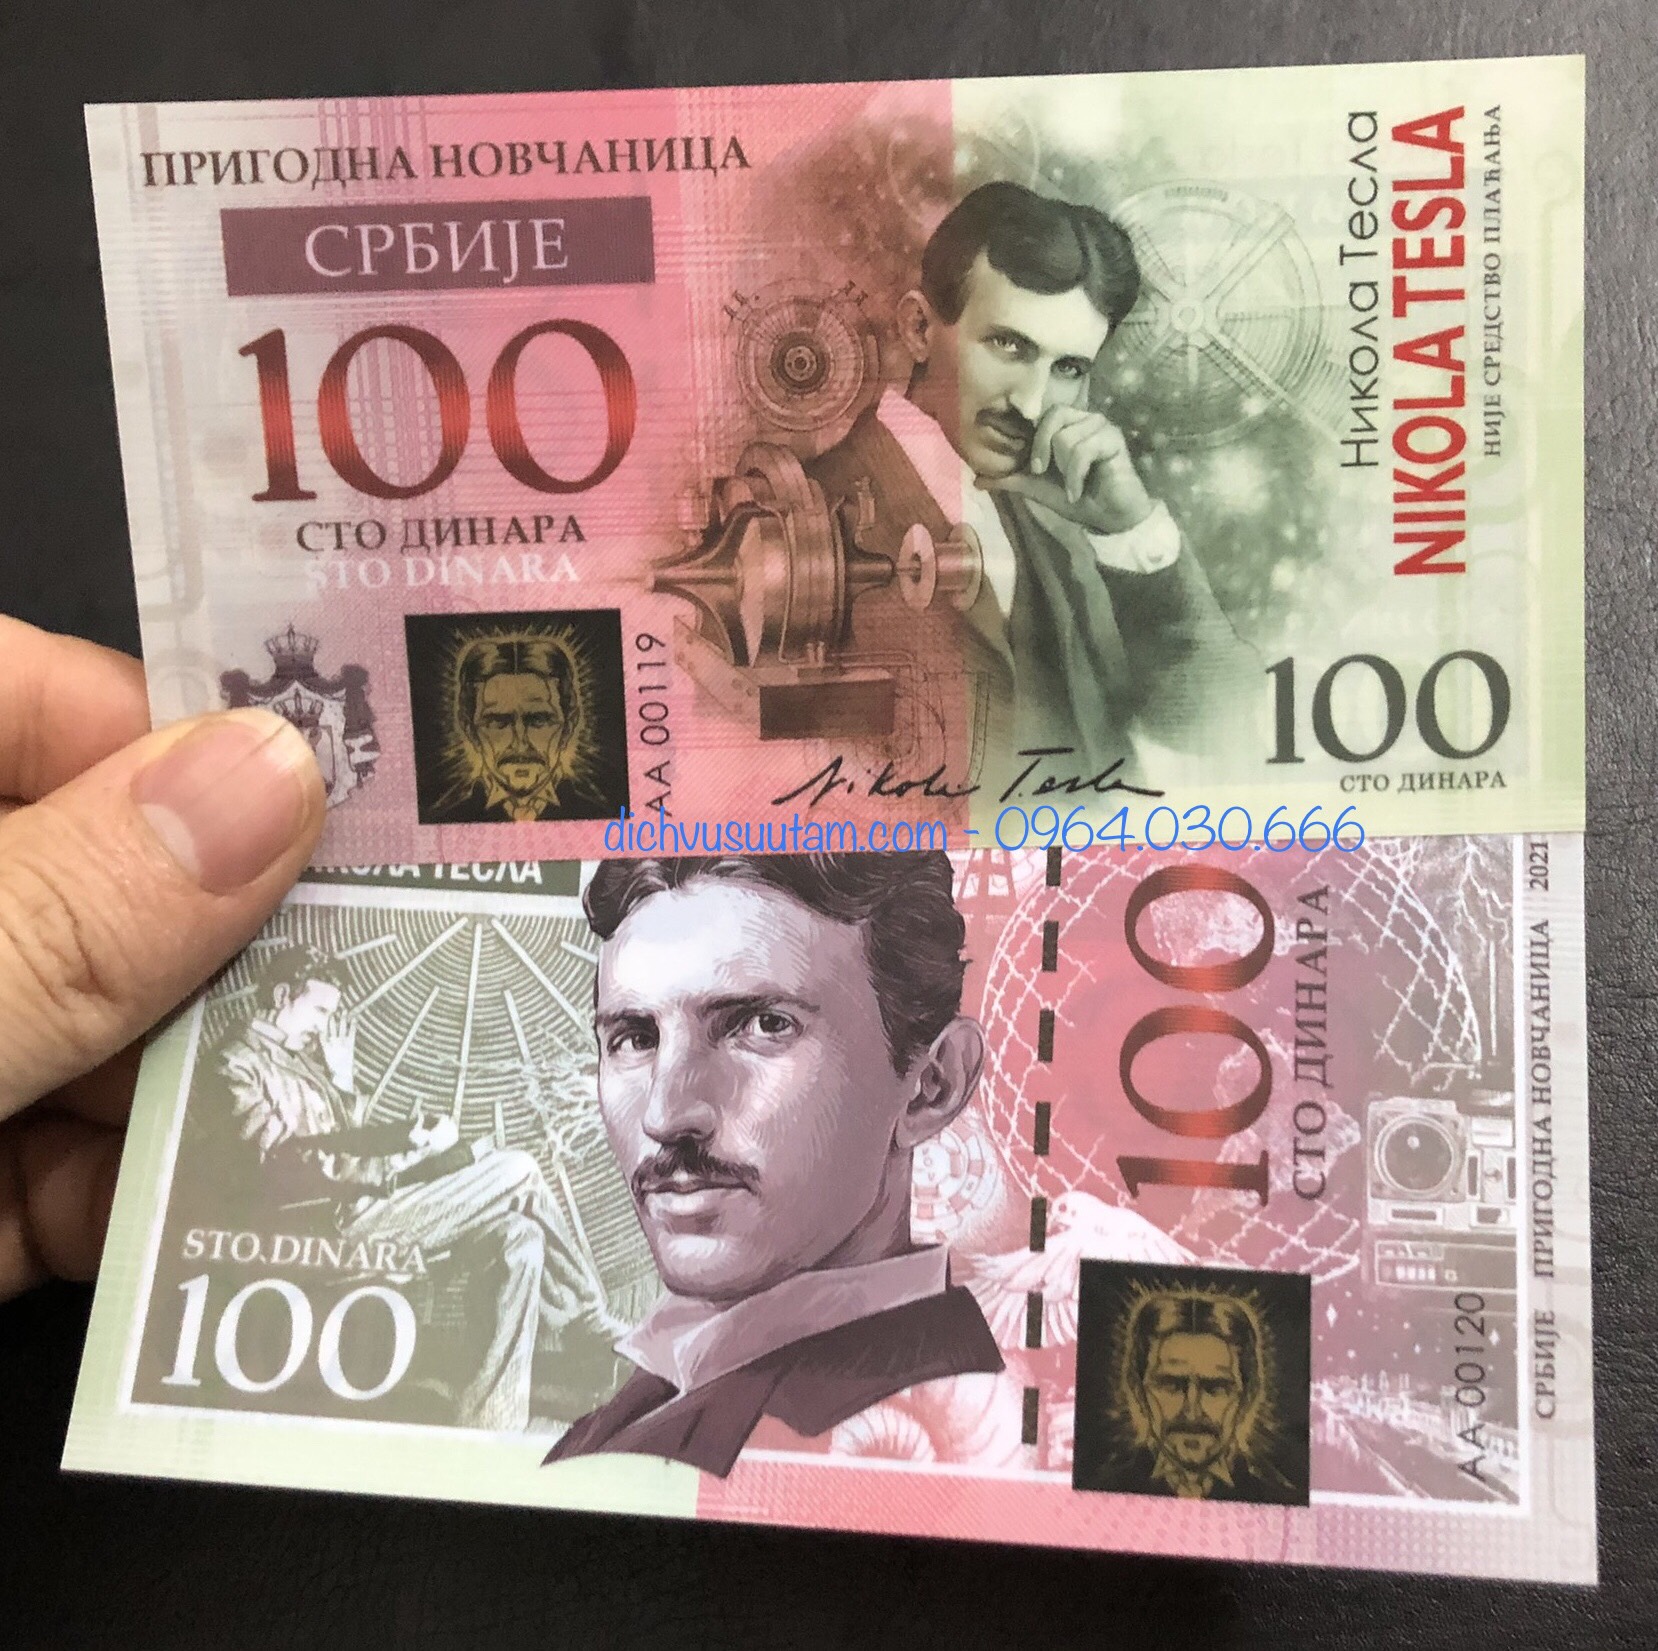 Tiền lưu niệm Nikola Tesla 100 dinara polymer cao cấp, có bảo an phát sáng, tặng kèm phơi bảo quản